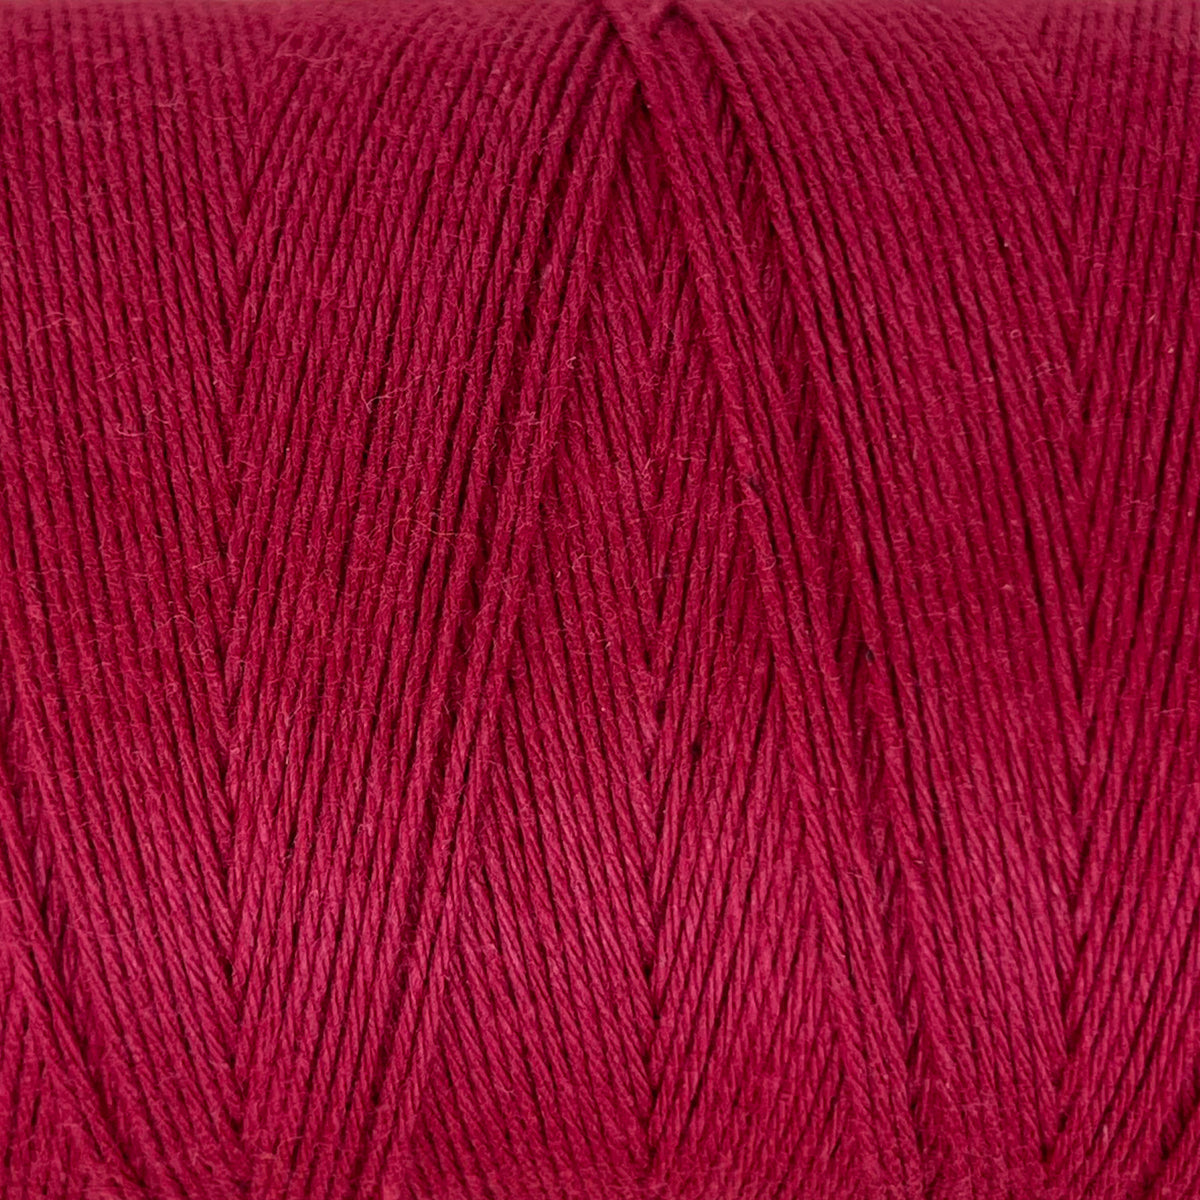 8/4 Cotton Warp Yarn - Natural and Colors